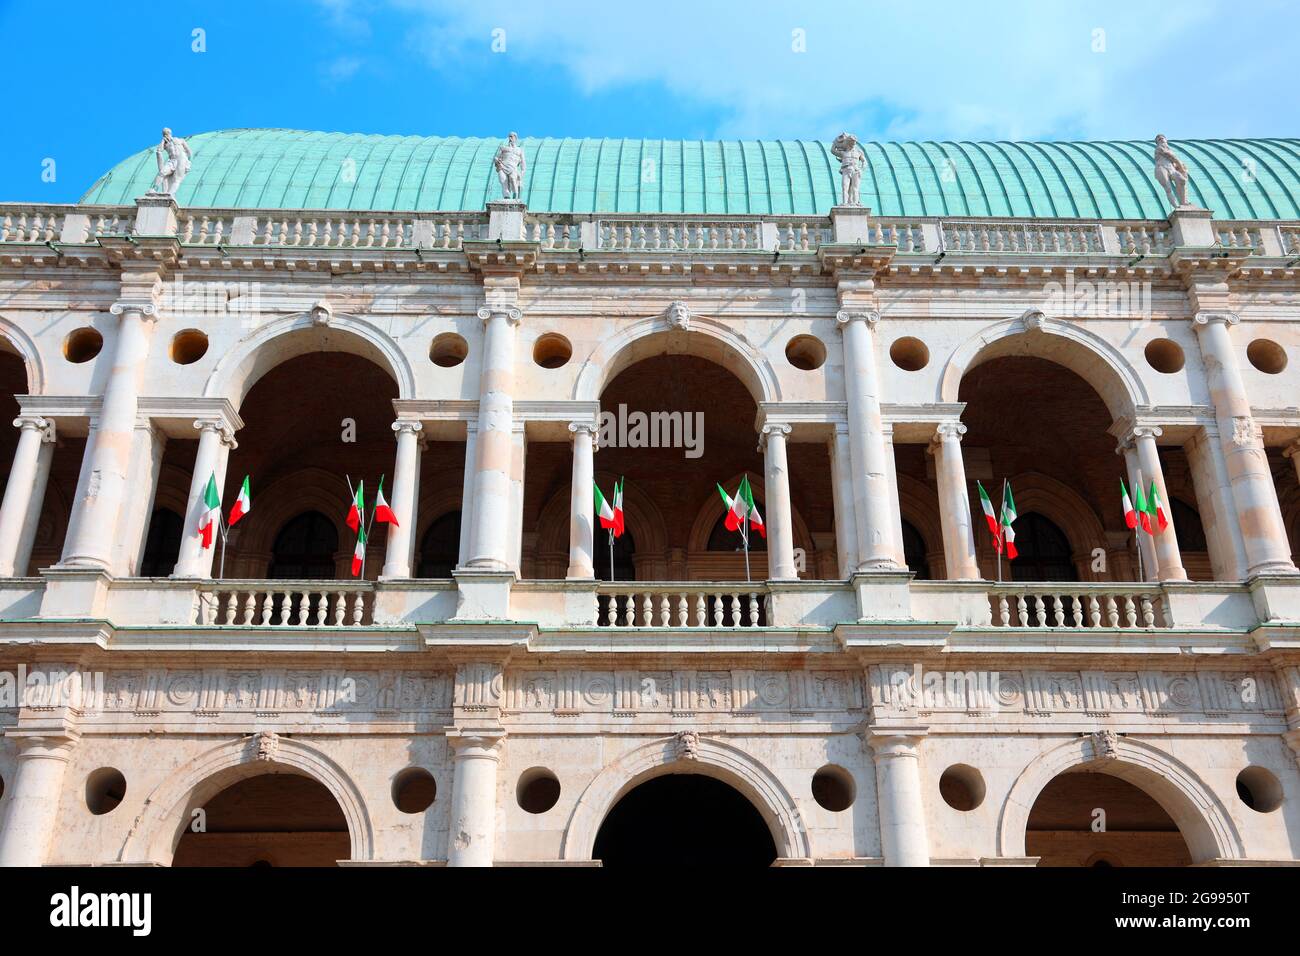 Famoso monumento chiamato Basilica Palladiana progettato dall'architetto Andrea Palladio nella città di Vicenza con le bandiere tricolore della nazione Italia Foto Stock